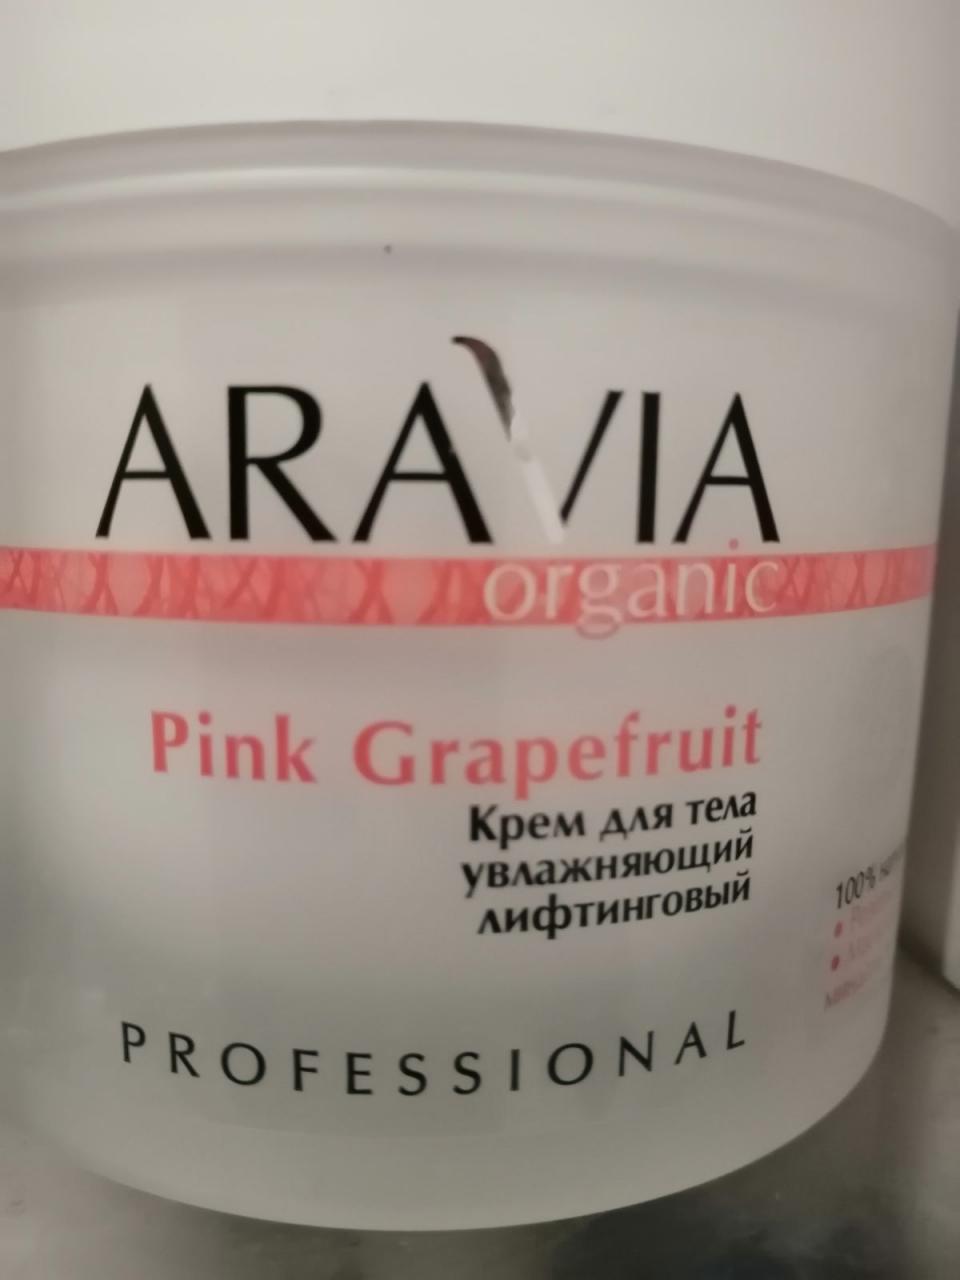 Отзыв на товар: Крем для тела увлажняющий лифтинговый "Pink Grapefruit". Aravia Professional.